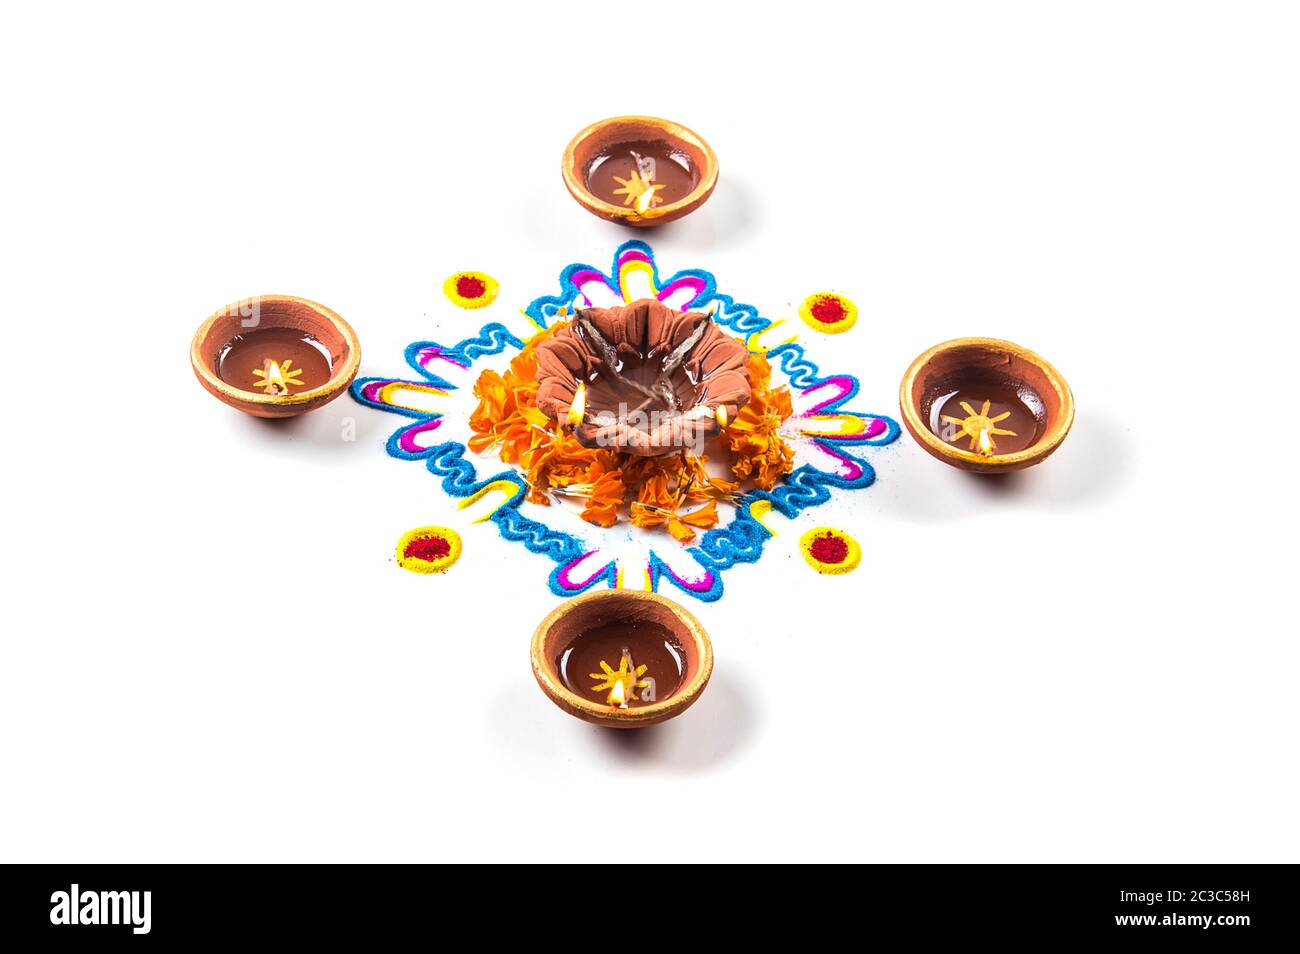 Ton diya Lampe leuchten bei Diwali Festival. Ton Diya auf RANGOLI. Happy Diwali Greetings Card Design, Indische hinduistische Lichterfest Diwali genannt. Stockfoto